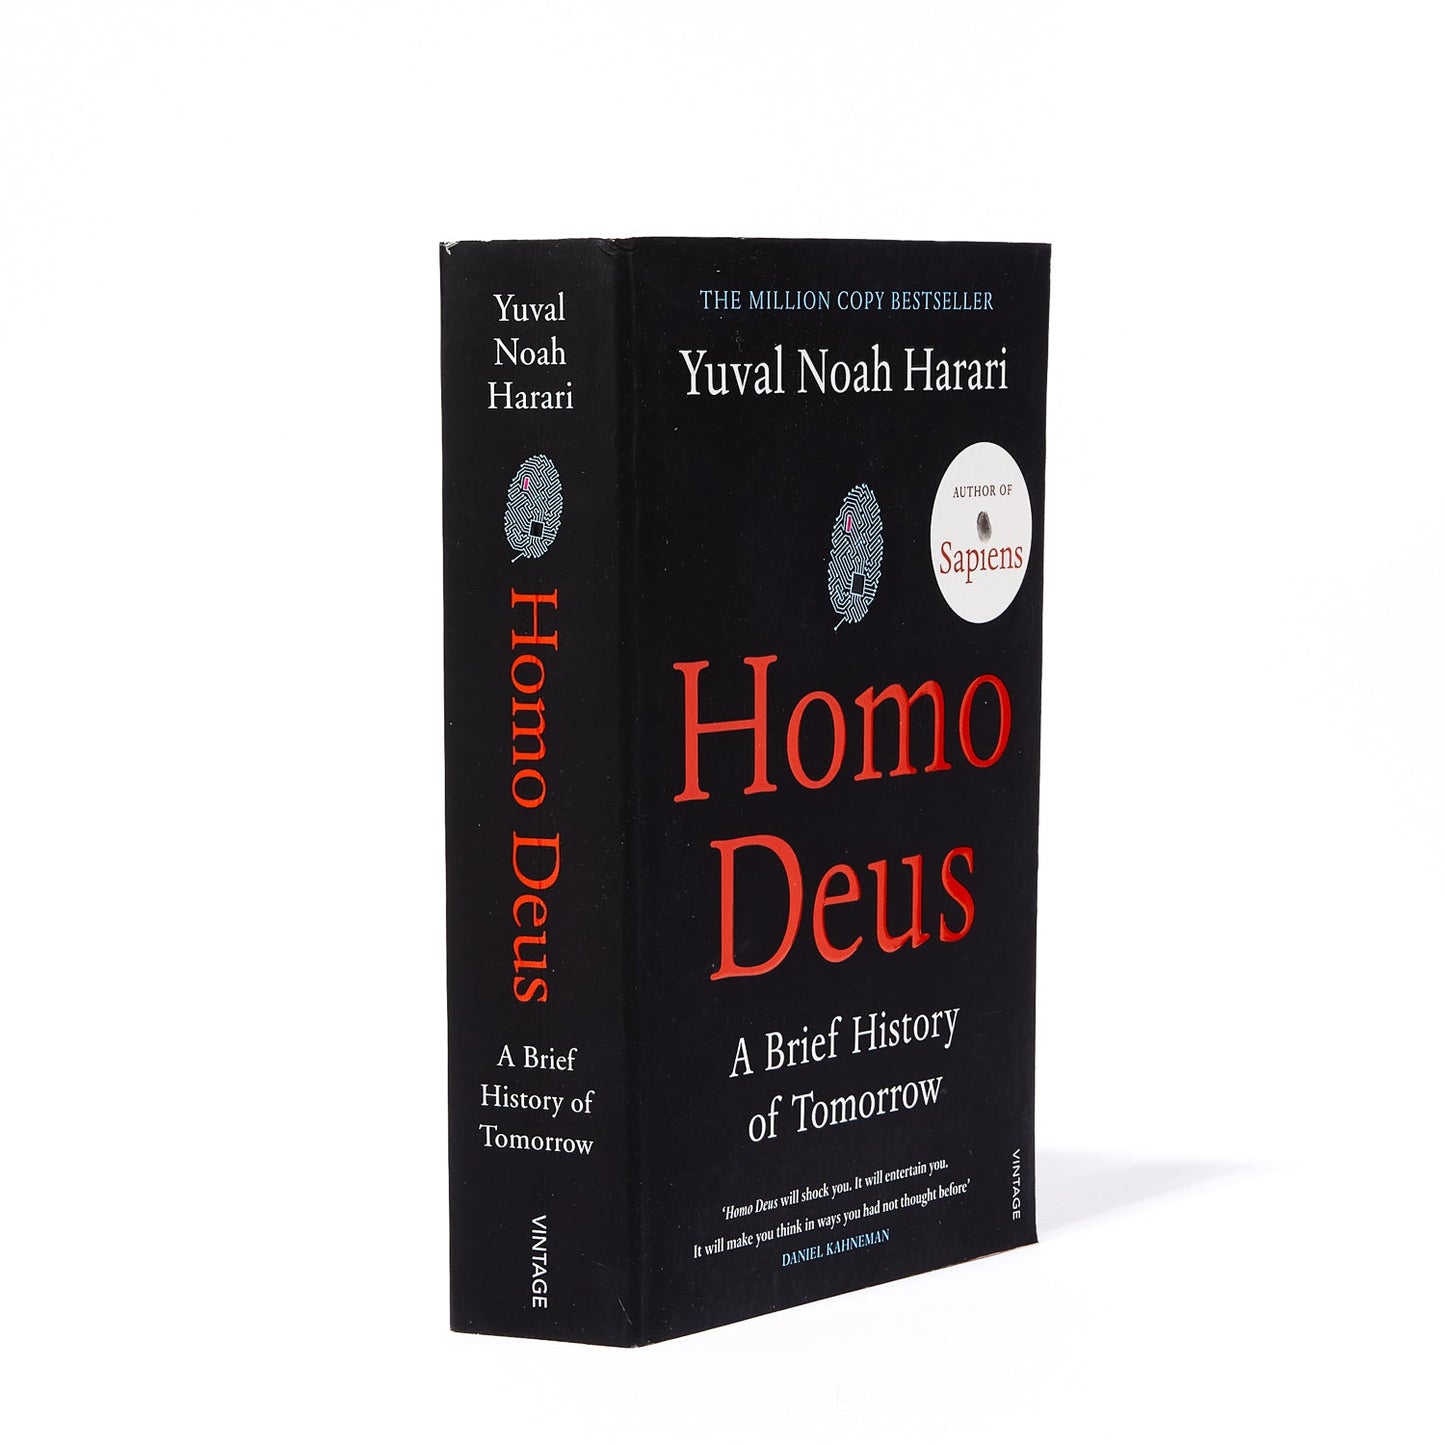 HOMO DEUS: A BRIEF HISTORY OF TOMORROW